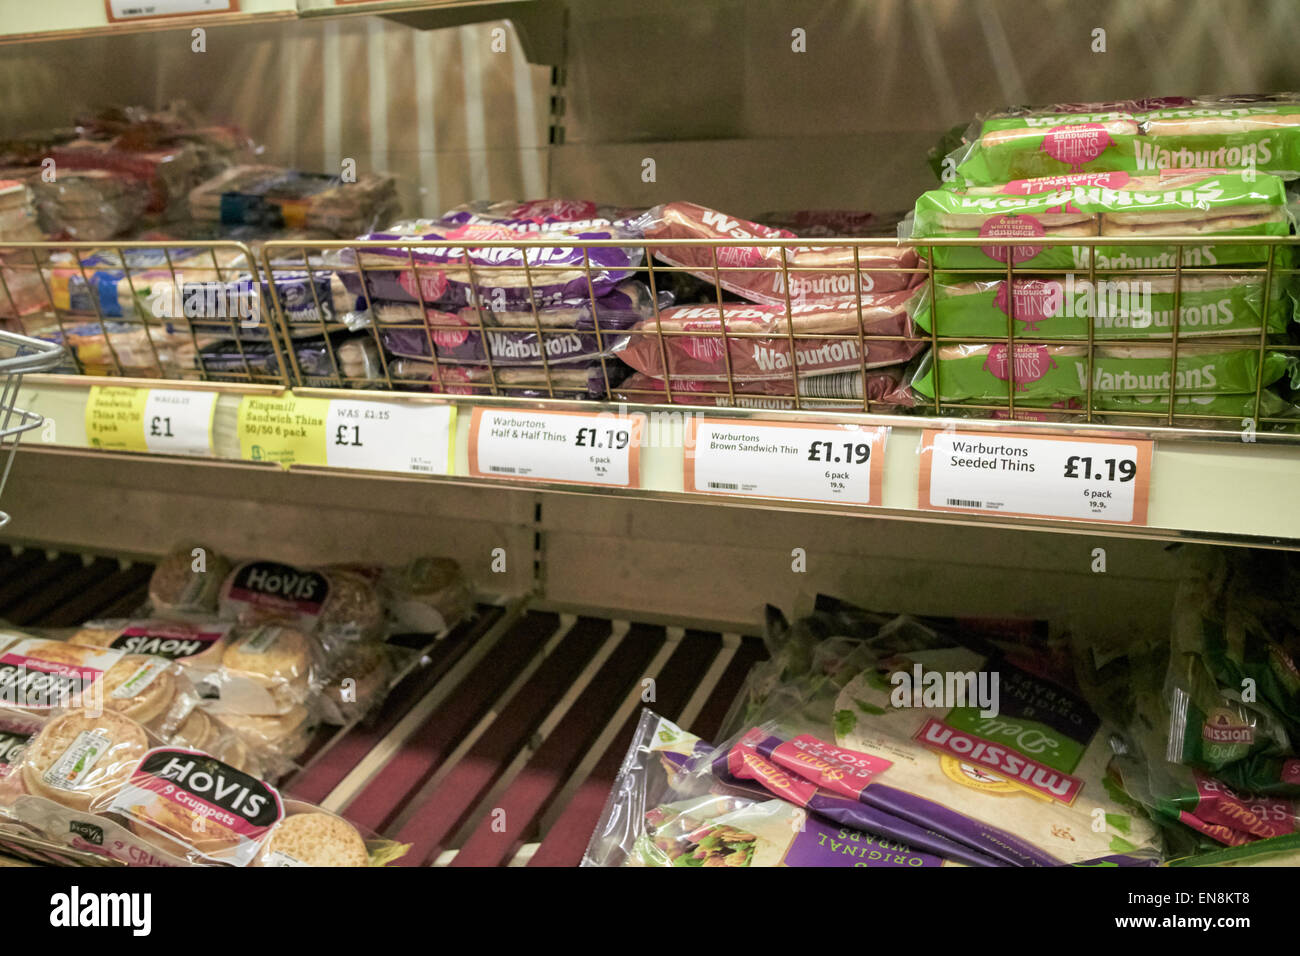 Amincit warburtons dans l'allée du pain en supermarché Morrisons au Royaume-Uni Banque D'Images